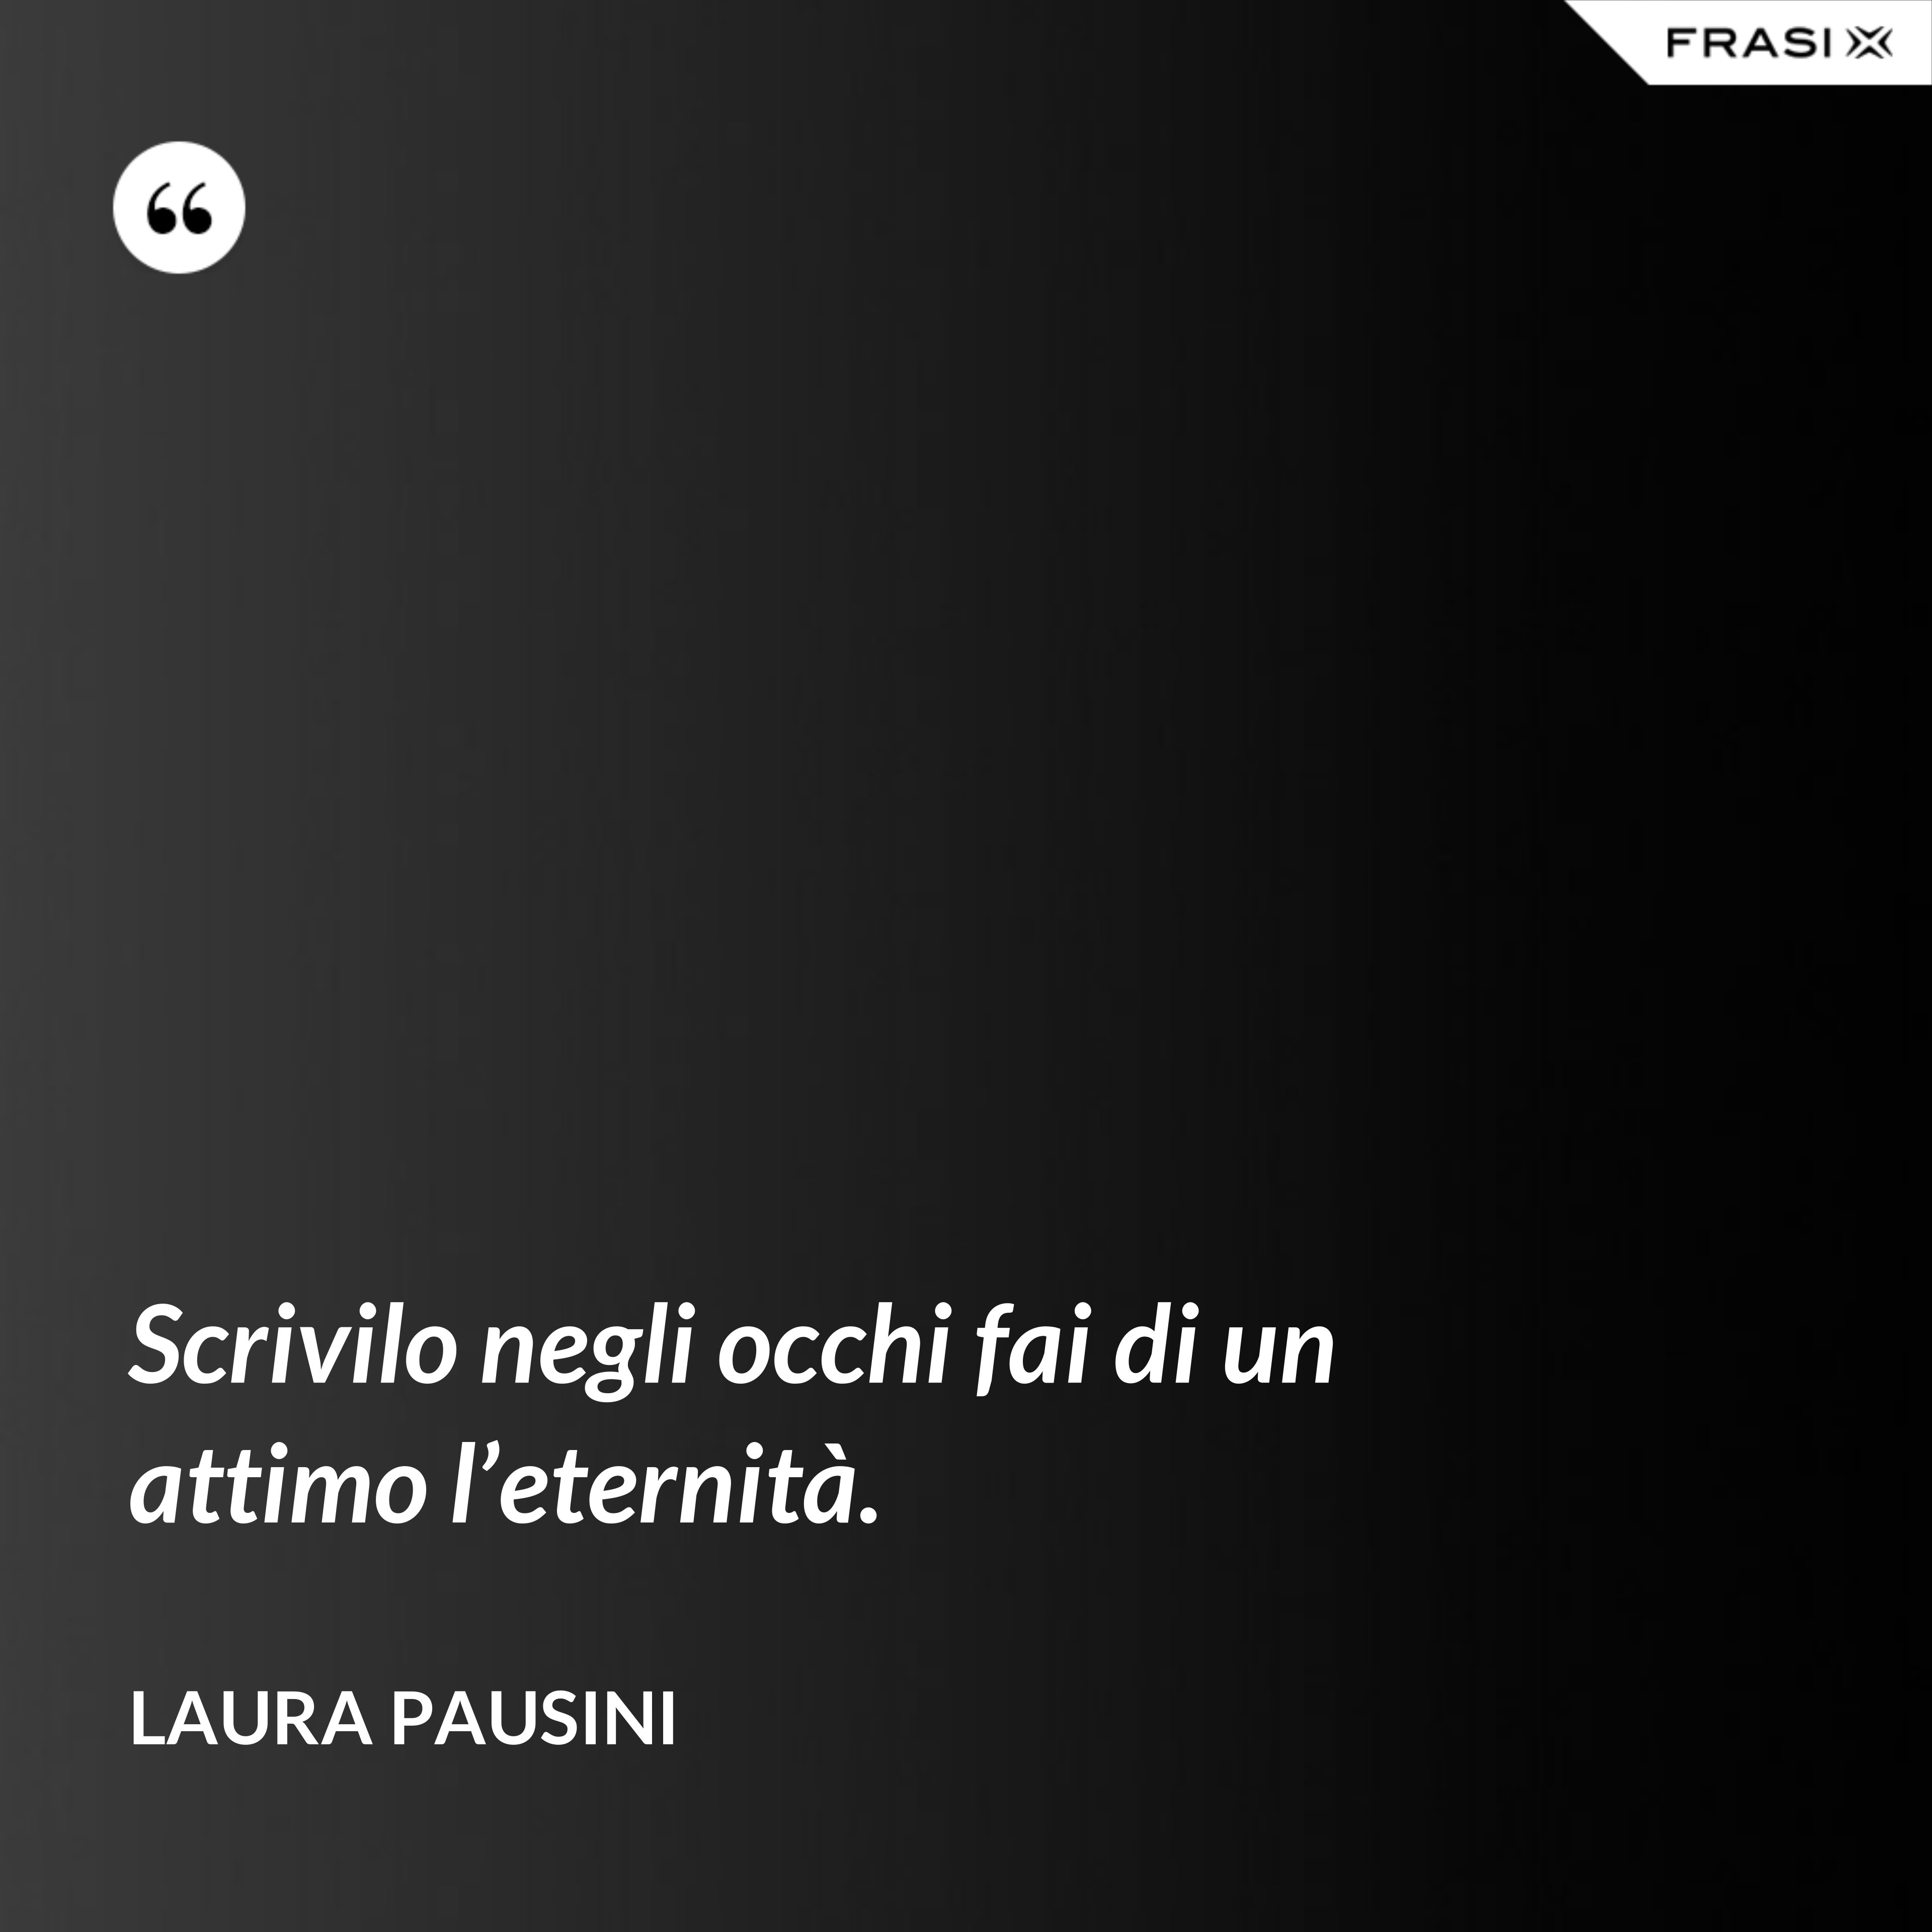 Scrivilo negli occhi fai di un attimo l’eternità. - Laura Pausini